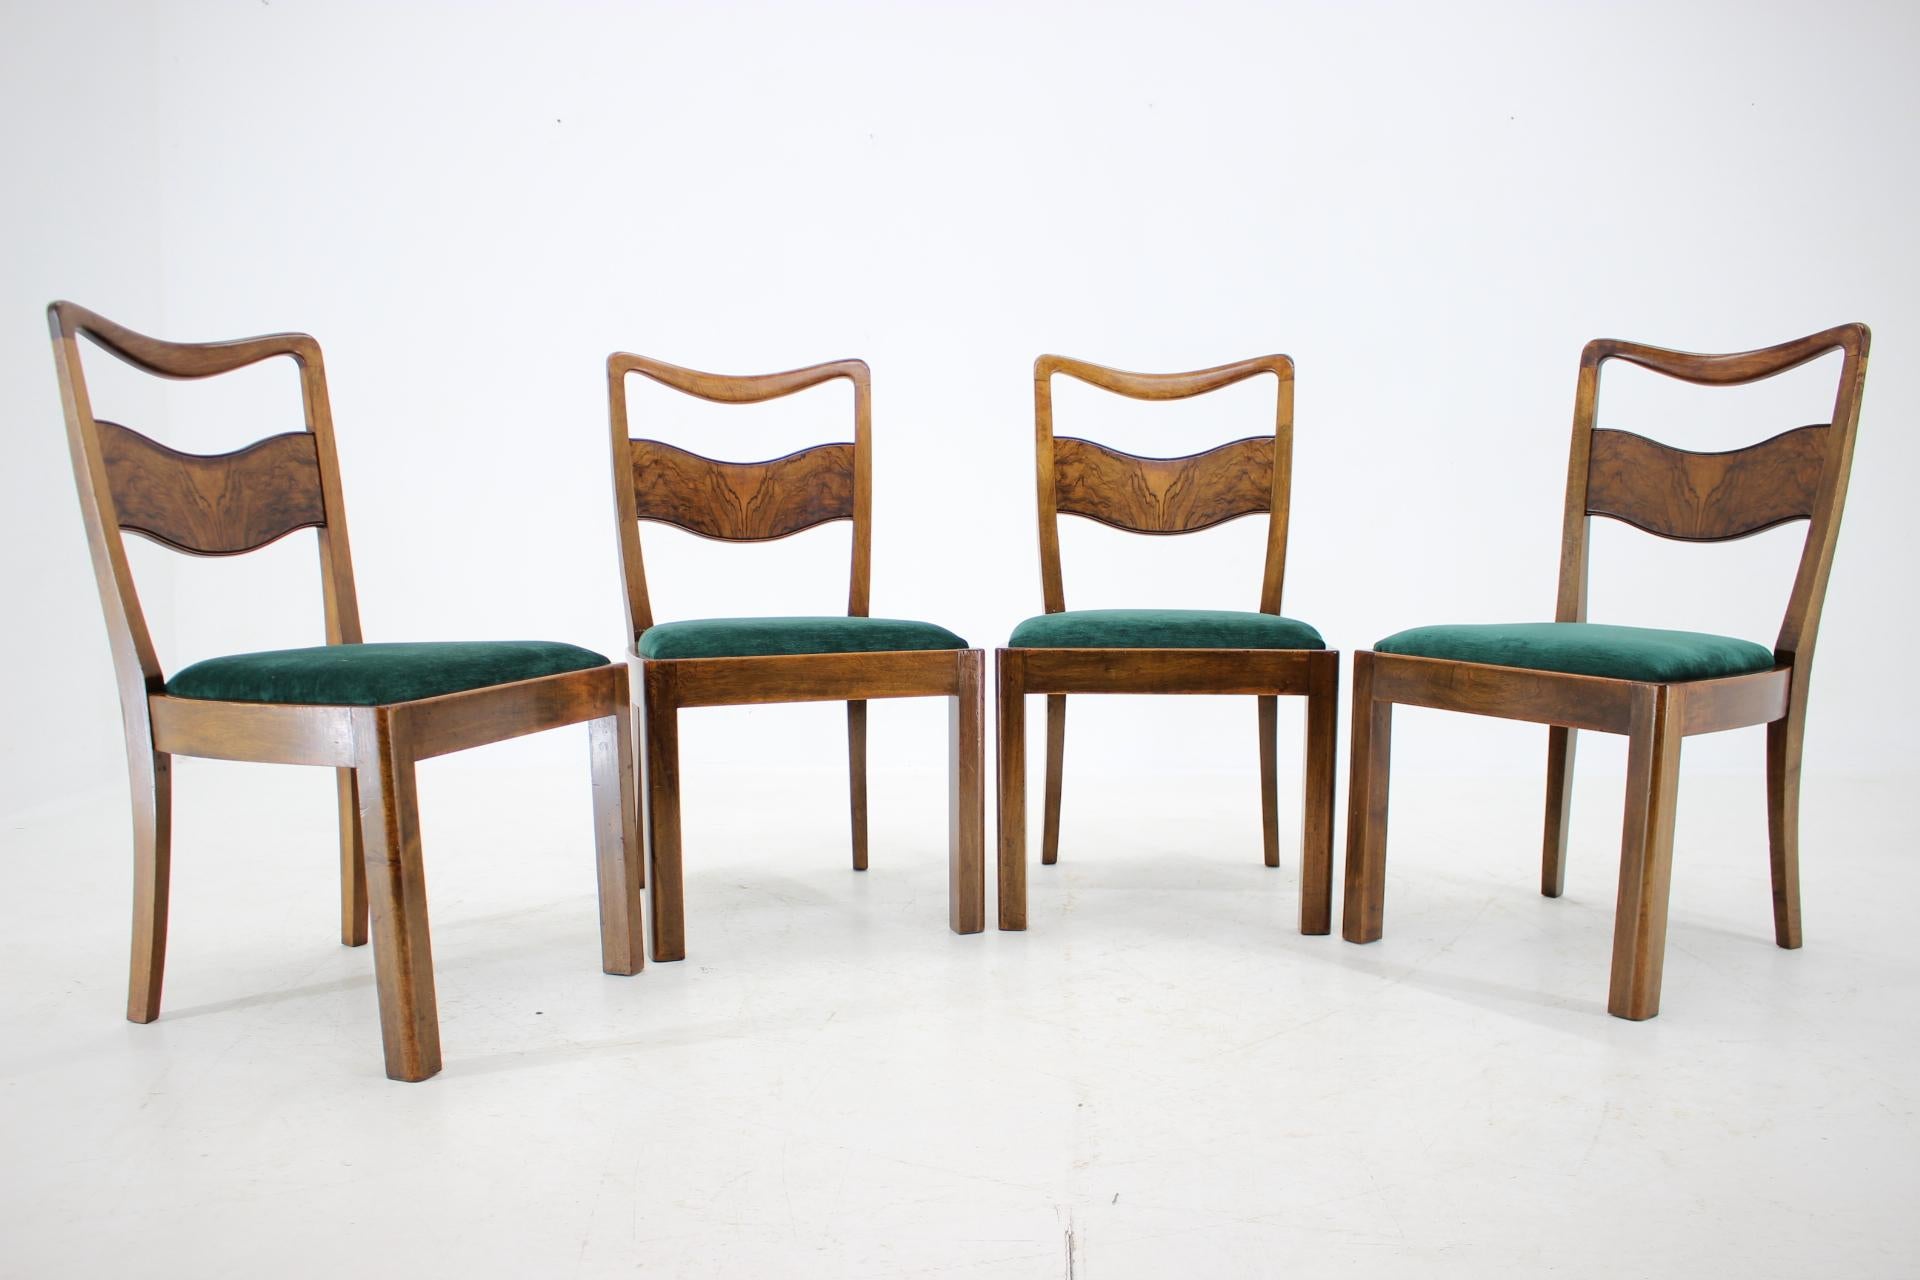 - Nouvellement tapissée d'un tissu de velours vert foncé 
- Les parties en bois ont été remises à neuf 
- Toutes les chaises sont robustes et stables 
- Dimensions : Hauteur du siège 43 cm.